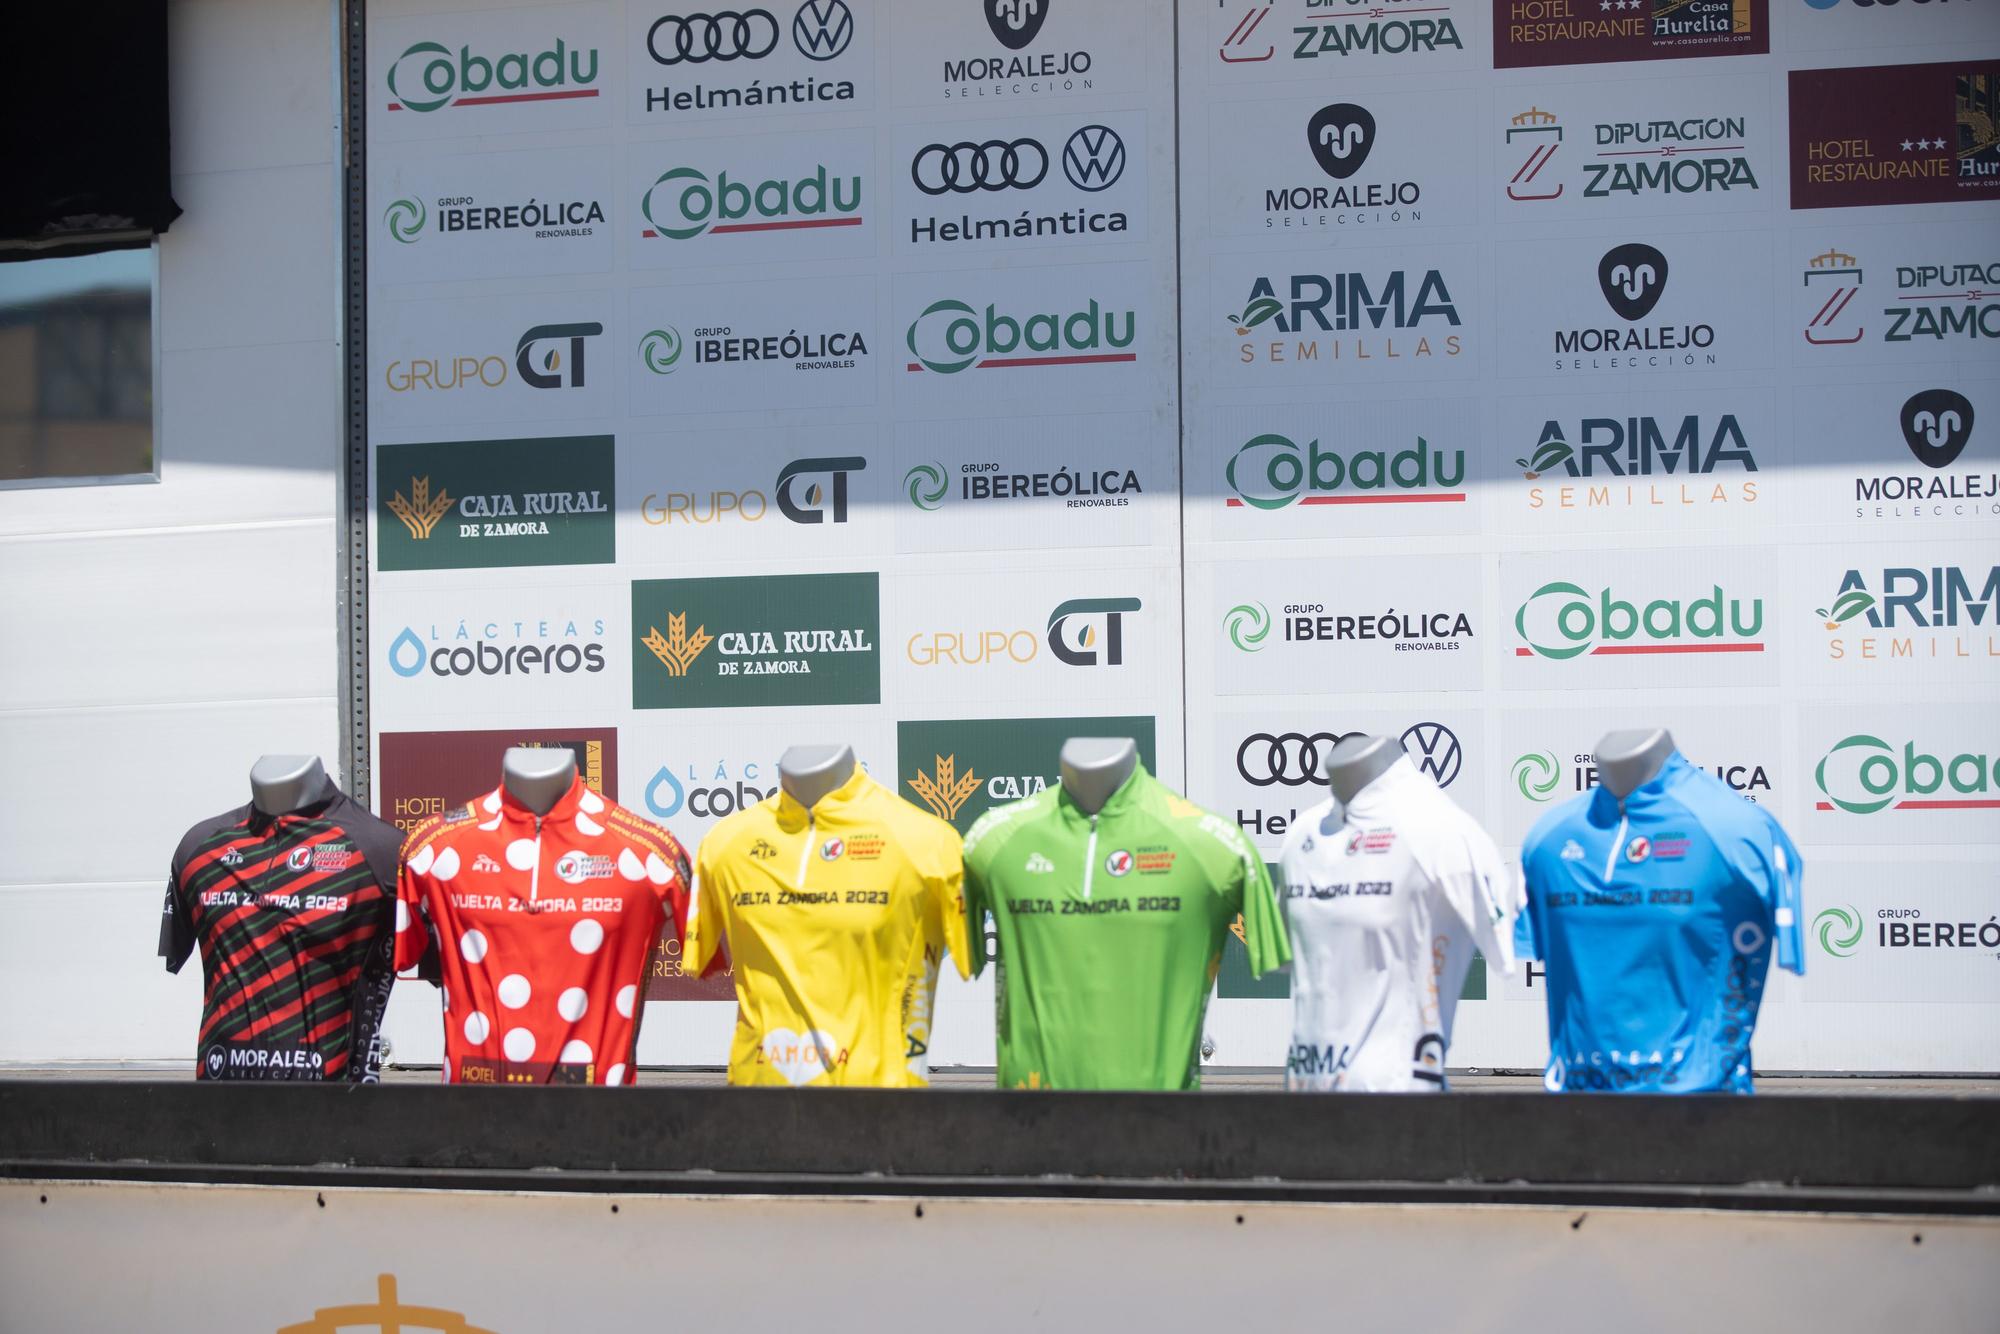 GALERÍA | La tercera etapa de la Vuelta a Zamora, en imágenes